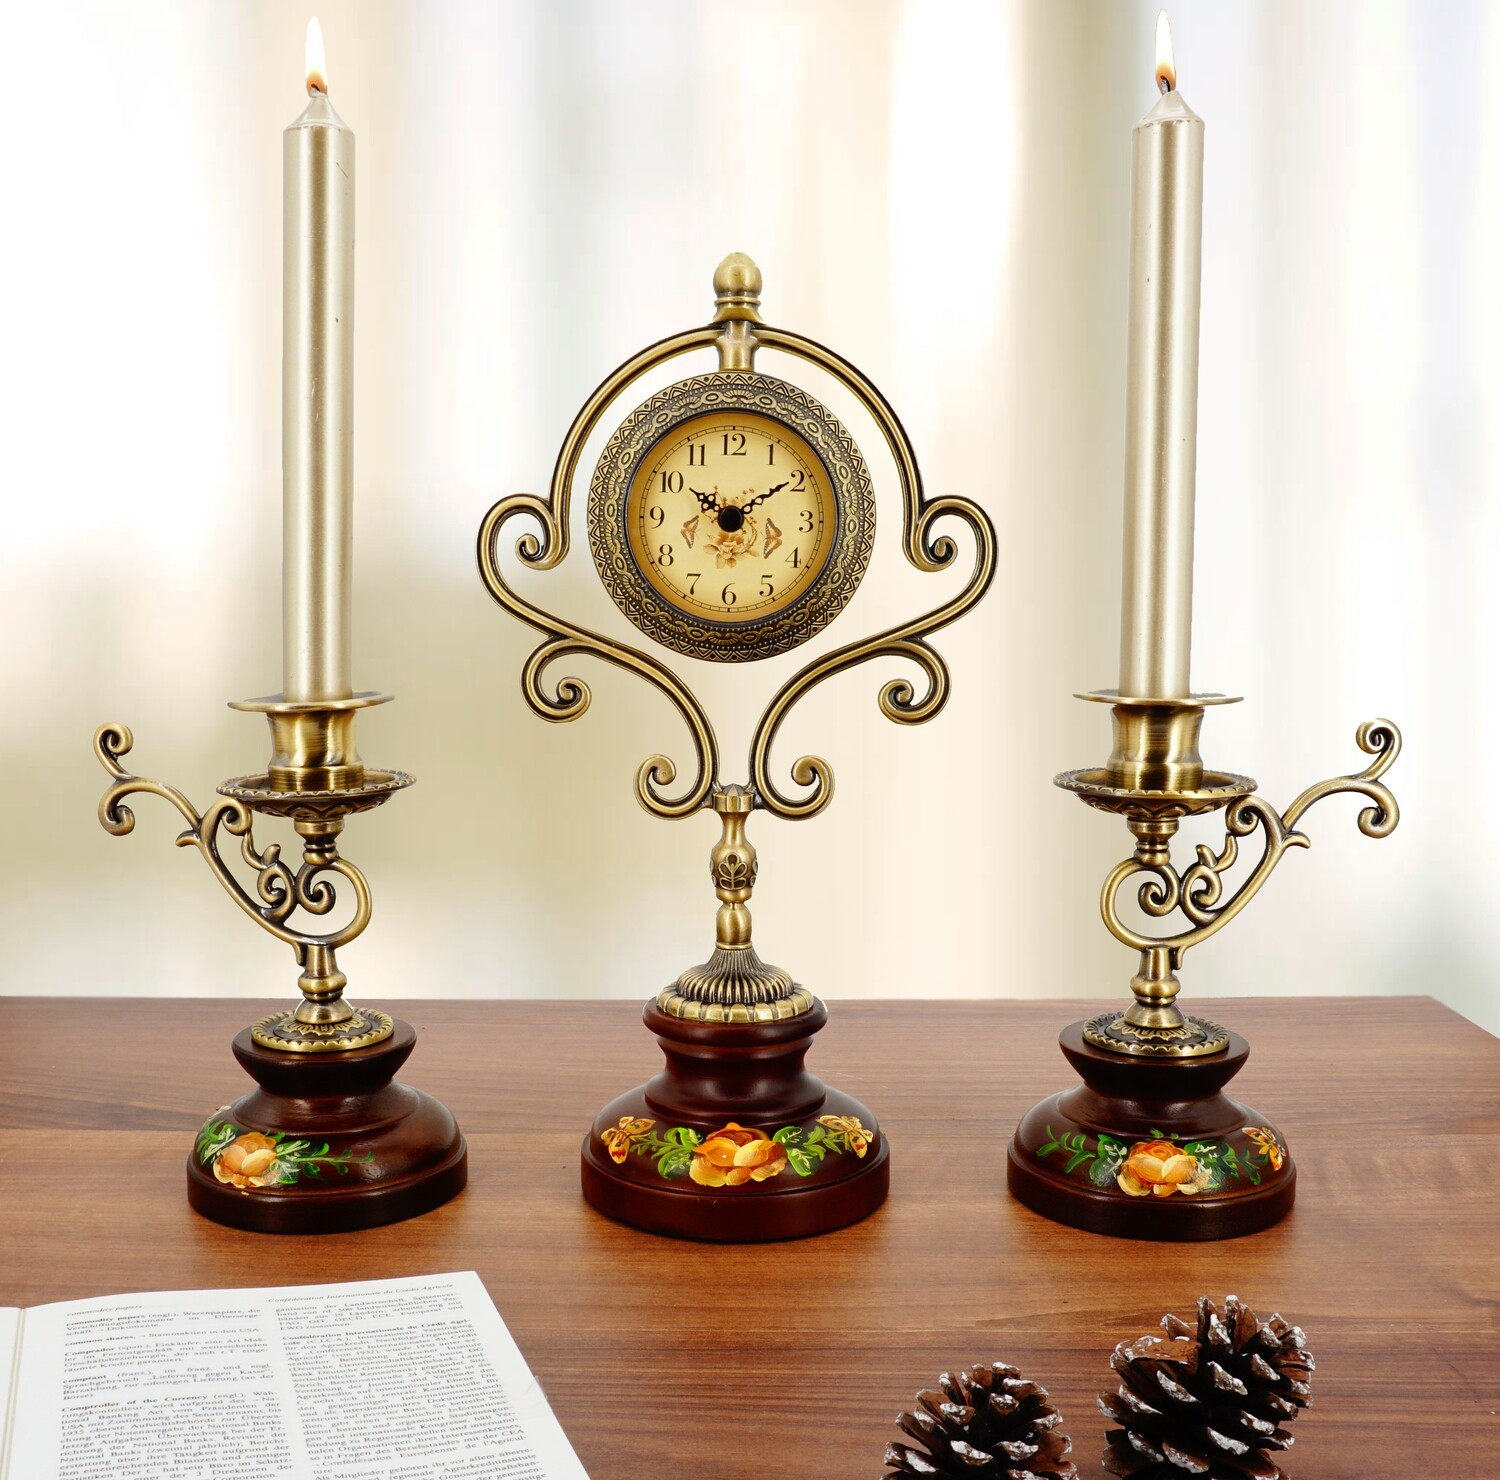 Verleihen Sie Ihrem Zuhause eine elegante Note mit der abc HOME Tischuhr mit Kerzenständern (30 cm H)!
Klassisches Design: Diese Tischuhr überzeugt mit ihrem zeitlosen Design und fügt sich harmonisch in jeden Einrichtungsstil ein.
Funktionale Kombination: Die Uhr kombiniert ein präzises Quarzuhrwerk mit zwei dekorativen Kerzenständern, die für eine gemütliche Atmosphäre sorgen.
Hochwertige Materialien: Die Uhr ist aus hochwertigem Holz, Metall und Kunststoff gefertigt und garantiert langlebige Qualität.
Praktische Details: Die Maße der Uhr betragen 10 cm T x 17 cm B x 30 cm H. Die Maße der Kerzenhalter betragen 9 cm T x 12 cm B x 17 cm H. Das Gewicht der Uhr beträgt 1 kg.
Spezifikationen:
Marke: abc HOME
Farbe: Braun
Maße (Uhr): 10 cm T x 17 cm B x 30 cm H
Maße (Kerzenhalter): 9 cm T x 12 cm B x 17 cm H
Material: Holz, Metall, Kunststoff
Gewicht: 1 kg
Uhrwerk: Quarzuhrwerk
Stromversorgung: Batteriebetrieben
Keywords: Tischuhr, Kerzenständer, klassisch, elegant, Quarzuhrwerk, Batteriebetrieben, Holz, Metall, Kunststoff, Wohnzimmer, Schlafzimmer, Büro, Dekoration, Geschenkidee